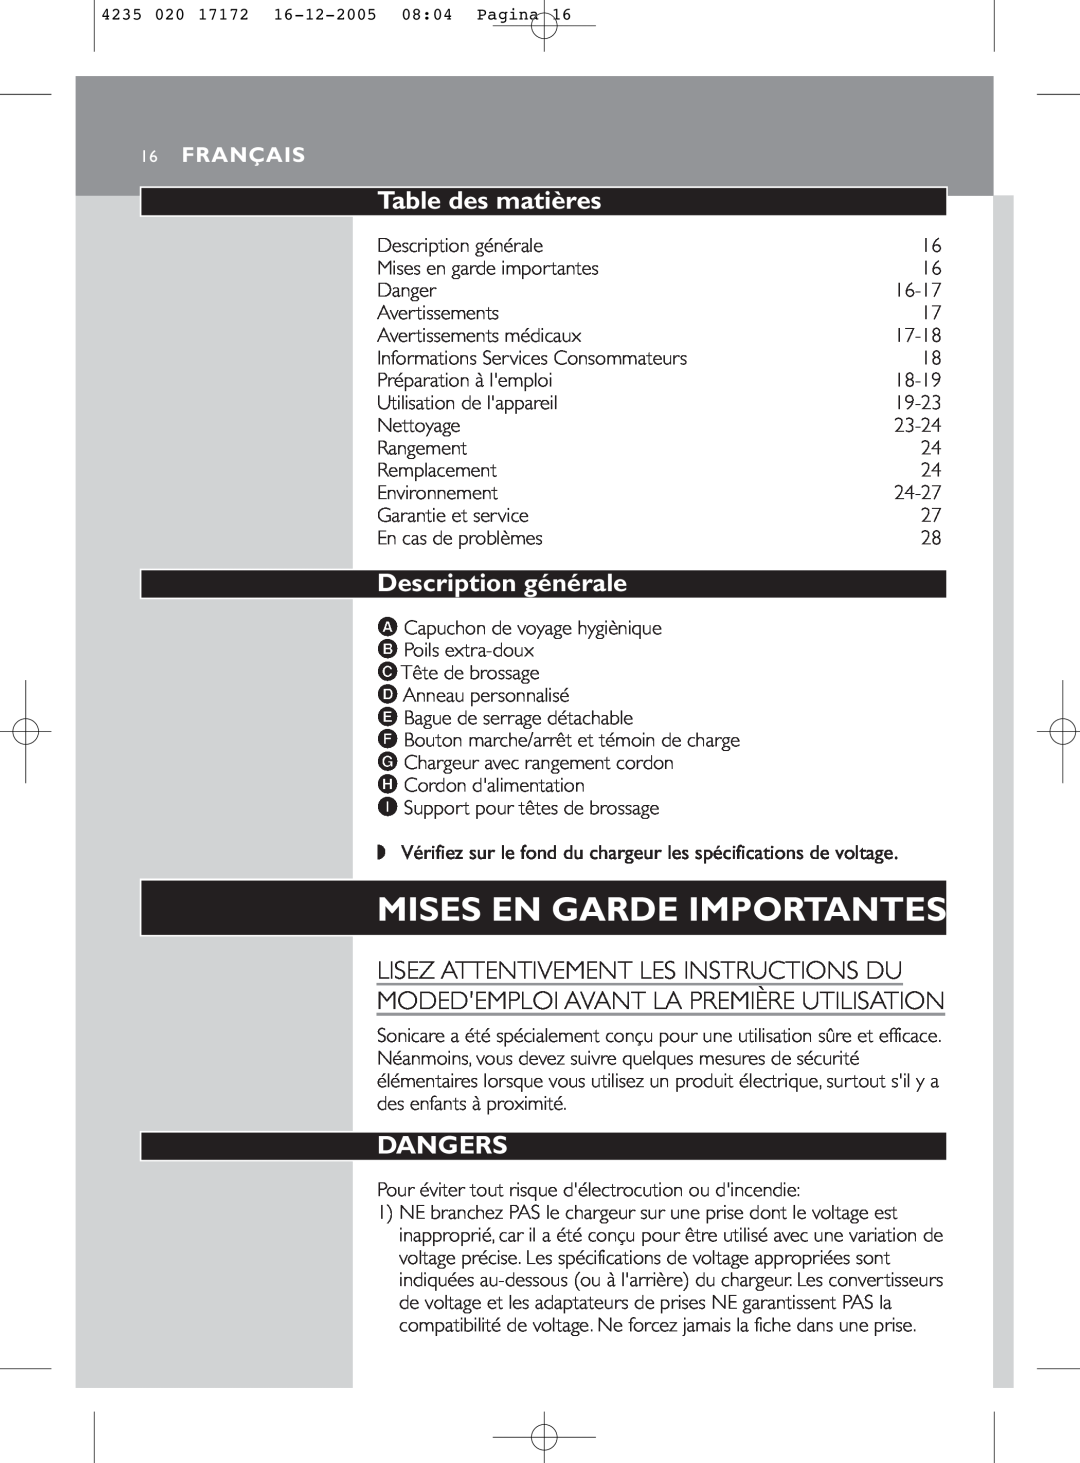 Sonicare e5000 manual Table des matières, Description générale, Lisez Attentivement Les Instructions Du, Français, Dangers 